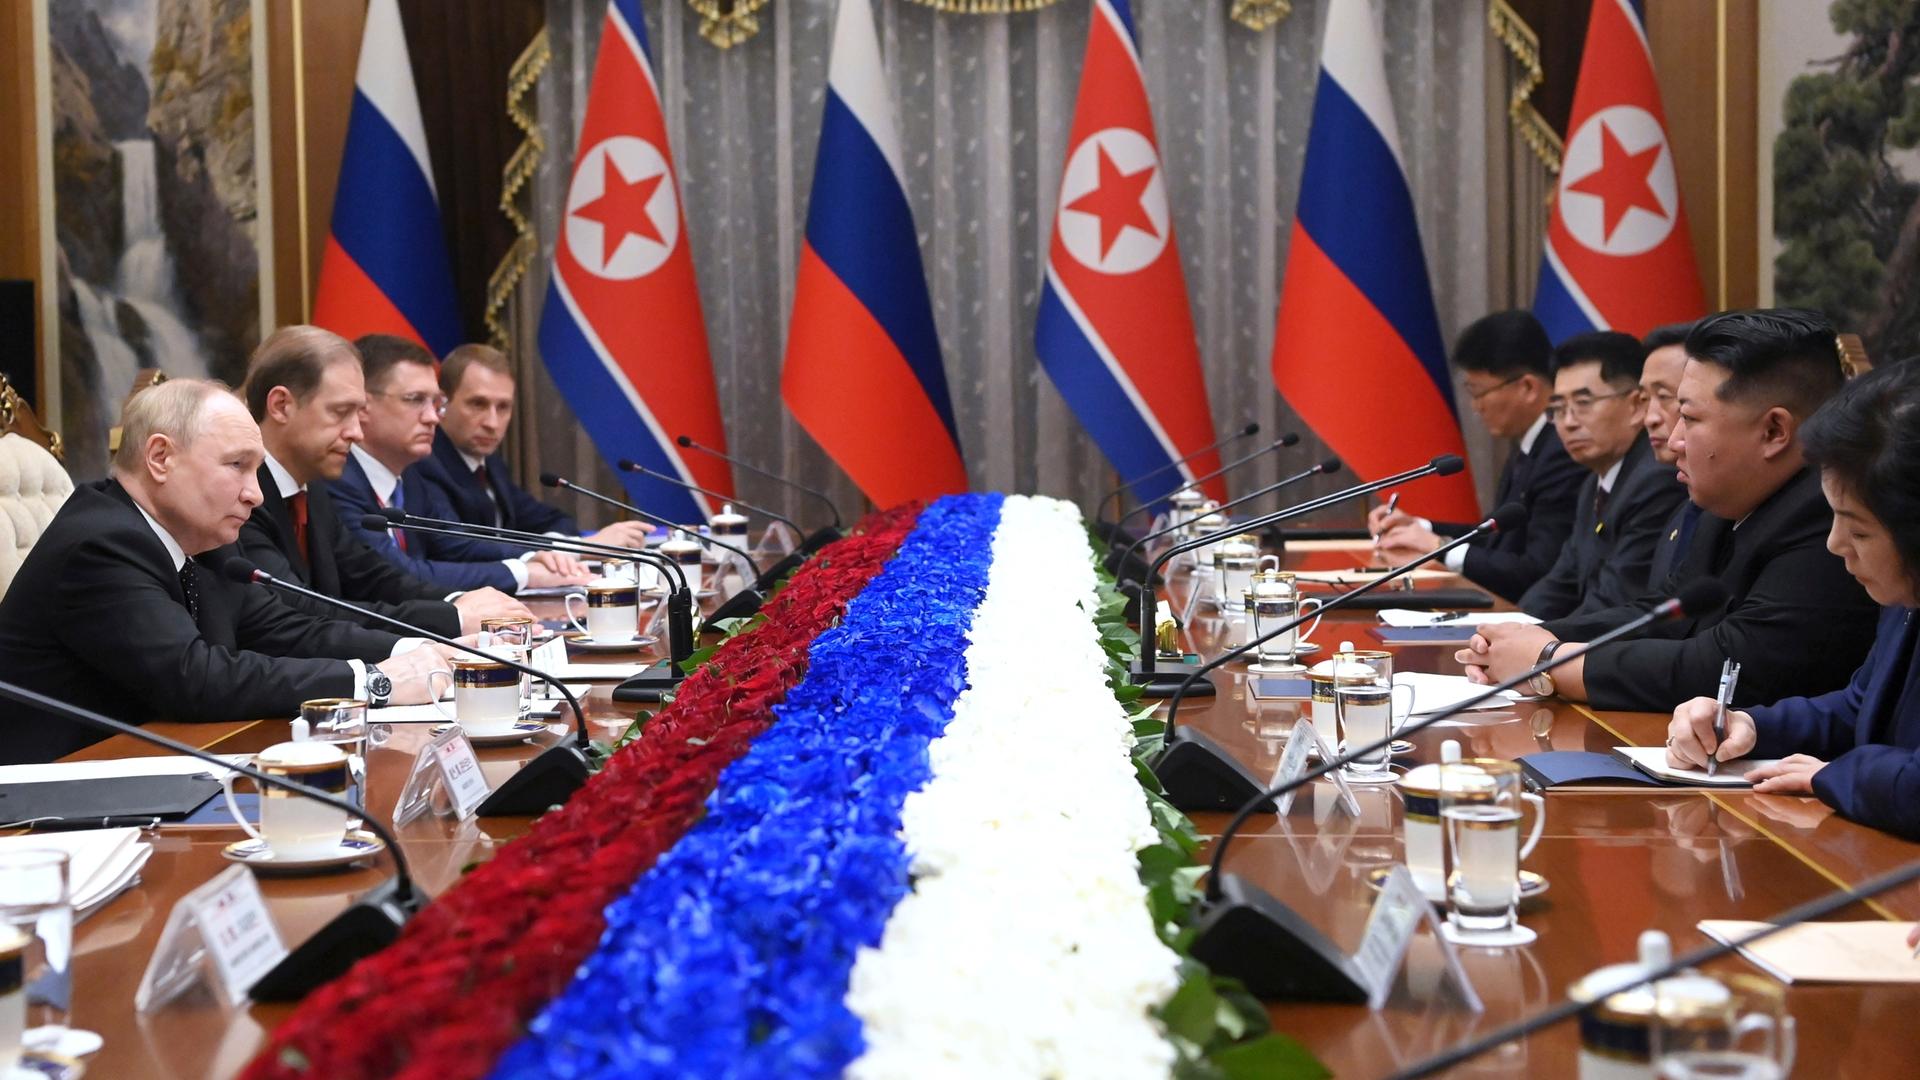 Nordkorea, Pjöngjang: Auf diesem von der staatlichen russischen Nachrichtenagentur Sputnik via AP veröffentlichten Foto nehmen der russische Präsident Wladimir Putin (l) und Nordkoreas Machthaber Kim Jong Un (2.v.r) an den Gesprächen teil. 